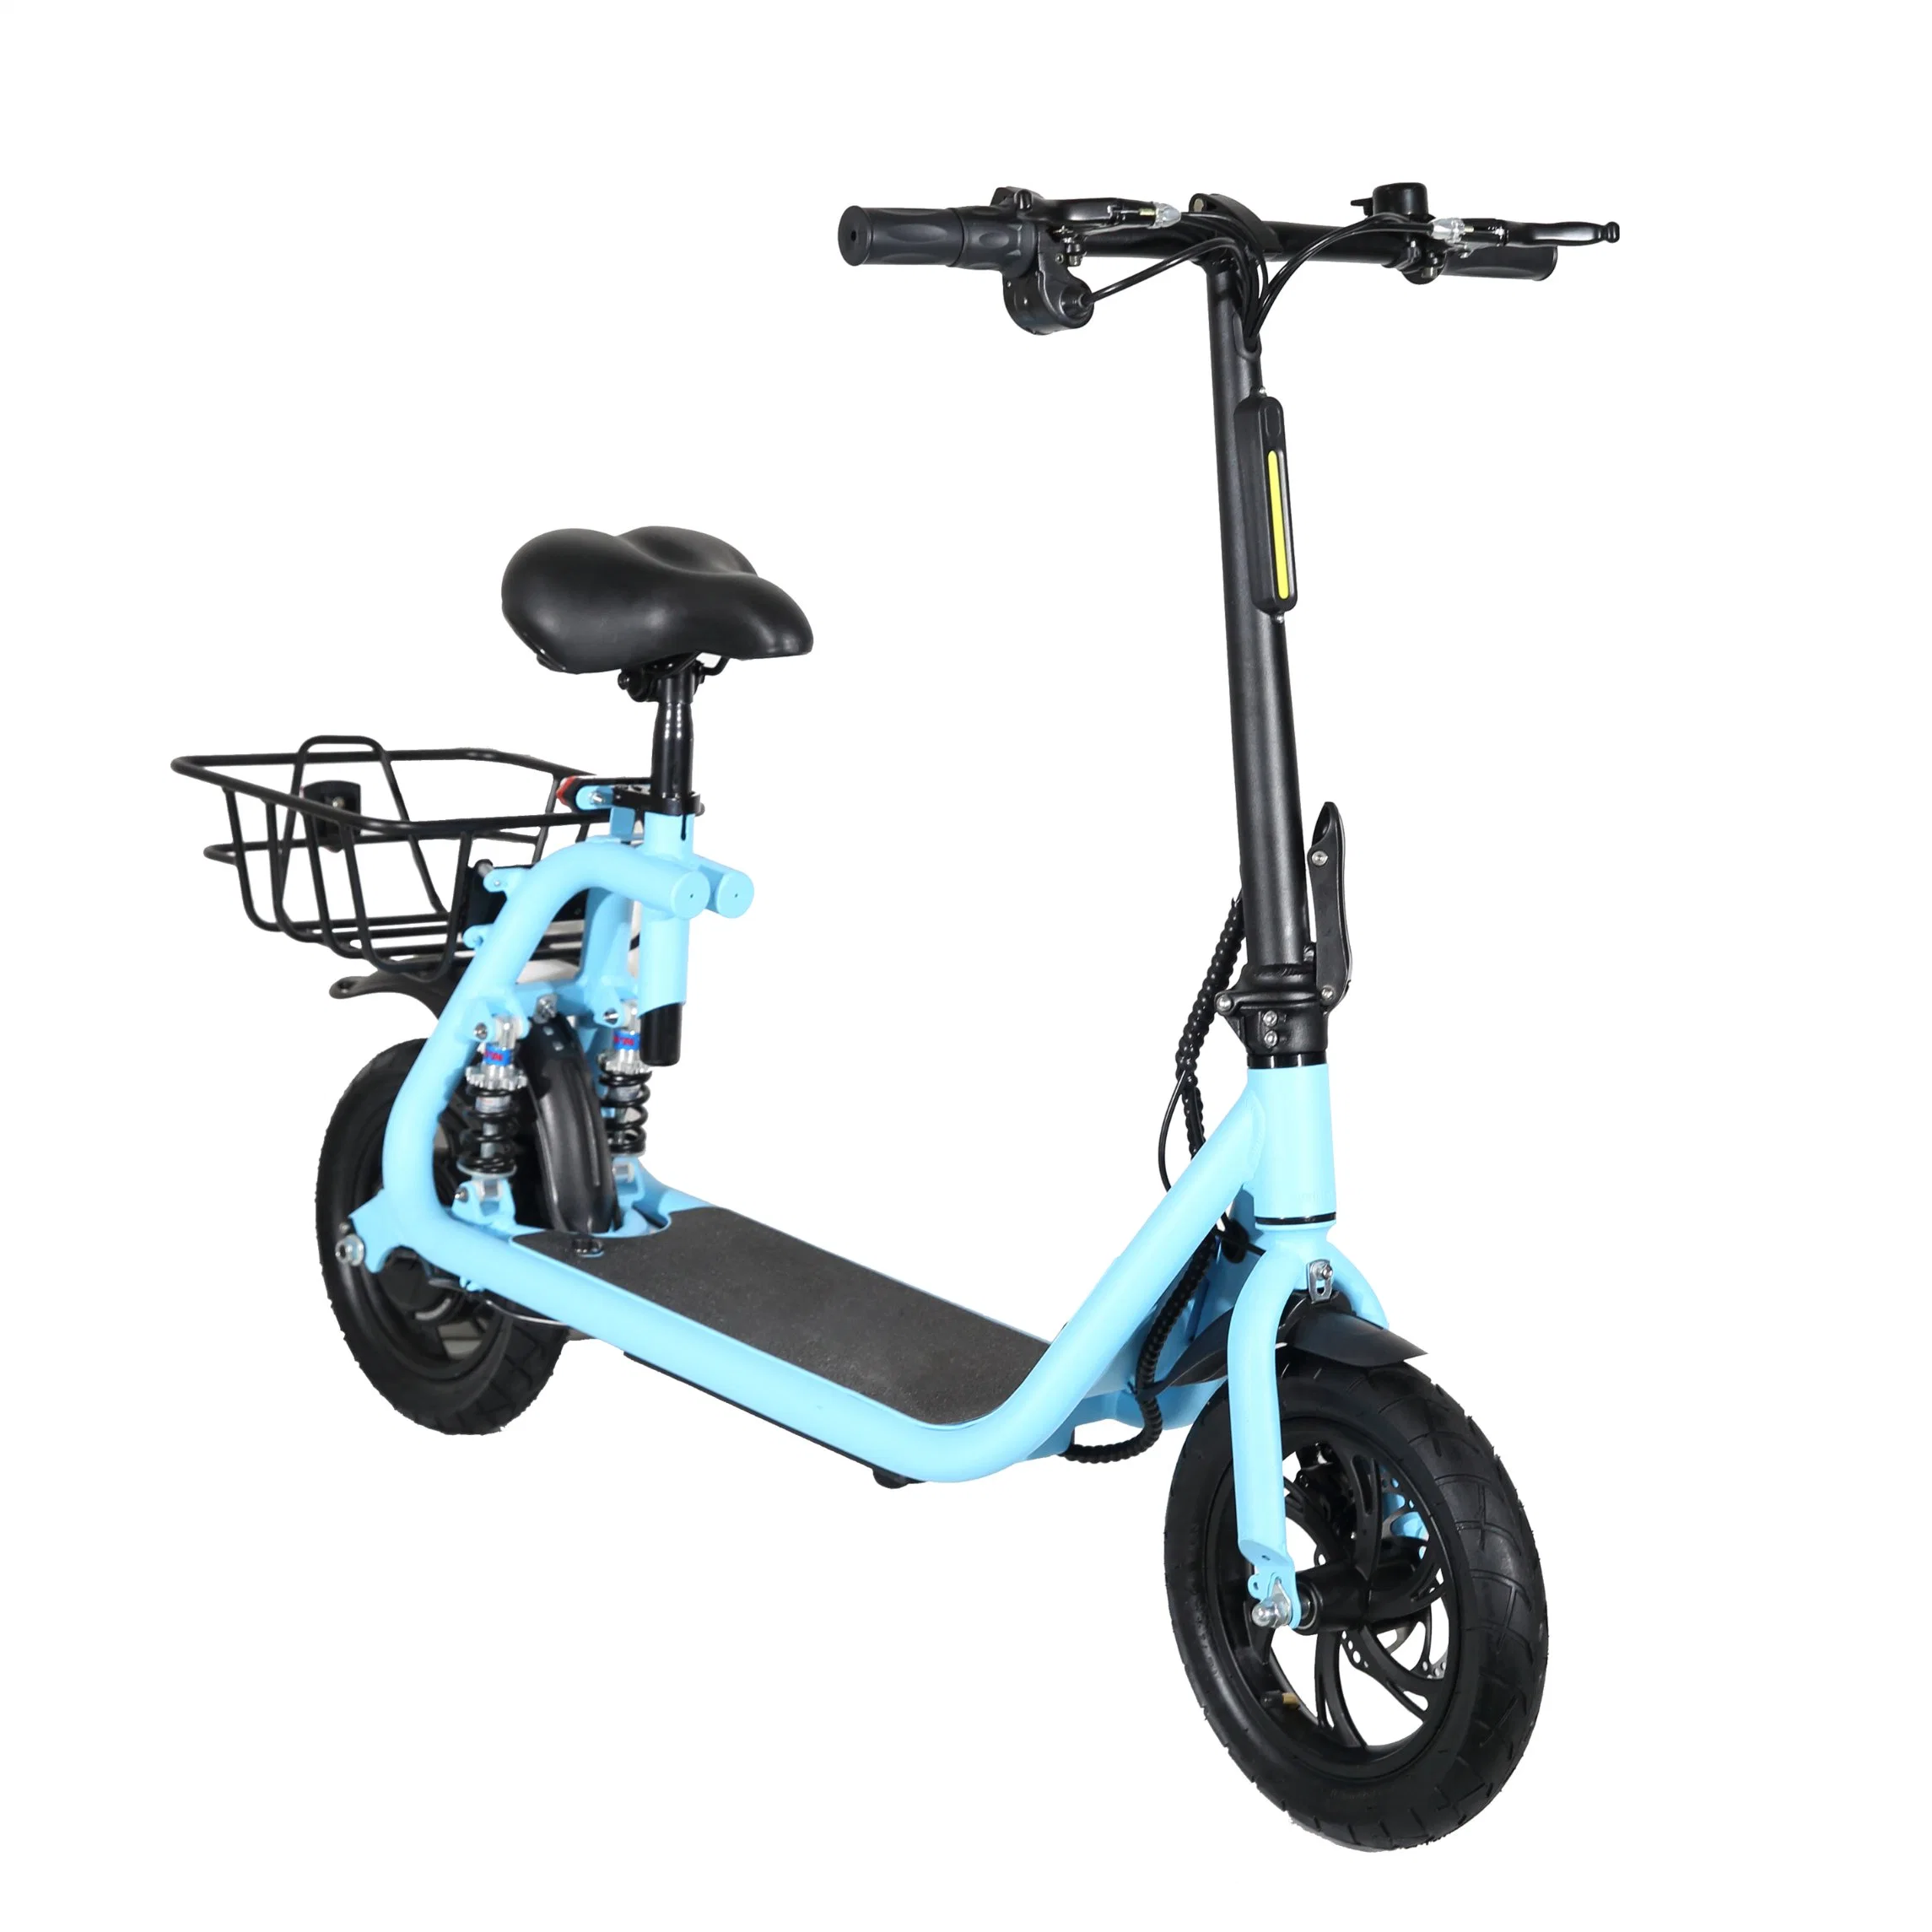 2022 Neues Produkt Fahrrad Elektro Fett Fahrrad Strand Crusier /Elektrisches Fahrrad 48V Straße Elektro-Fahrrad 36V500W